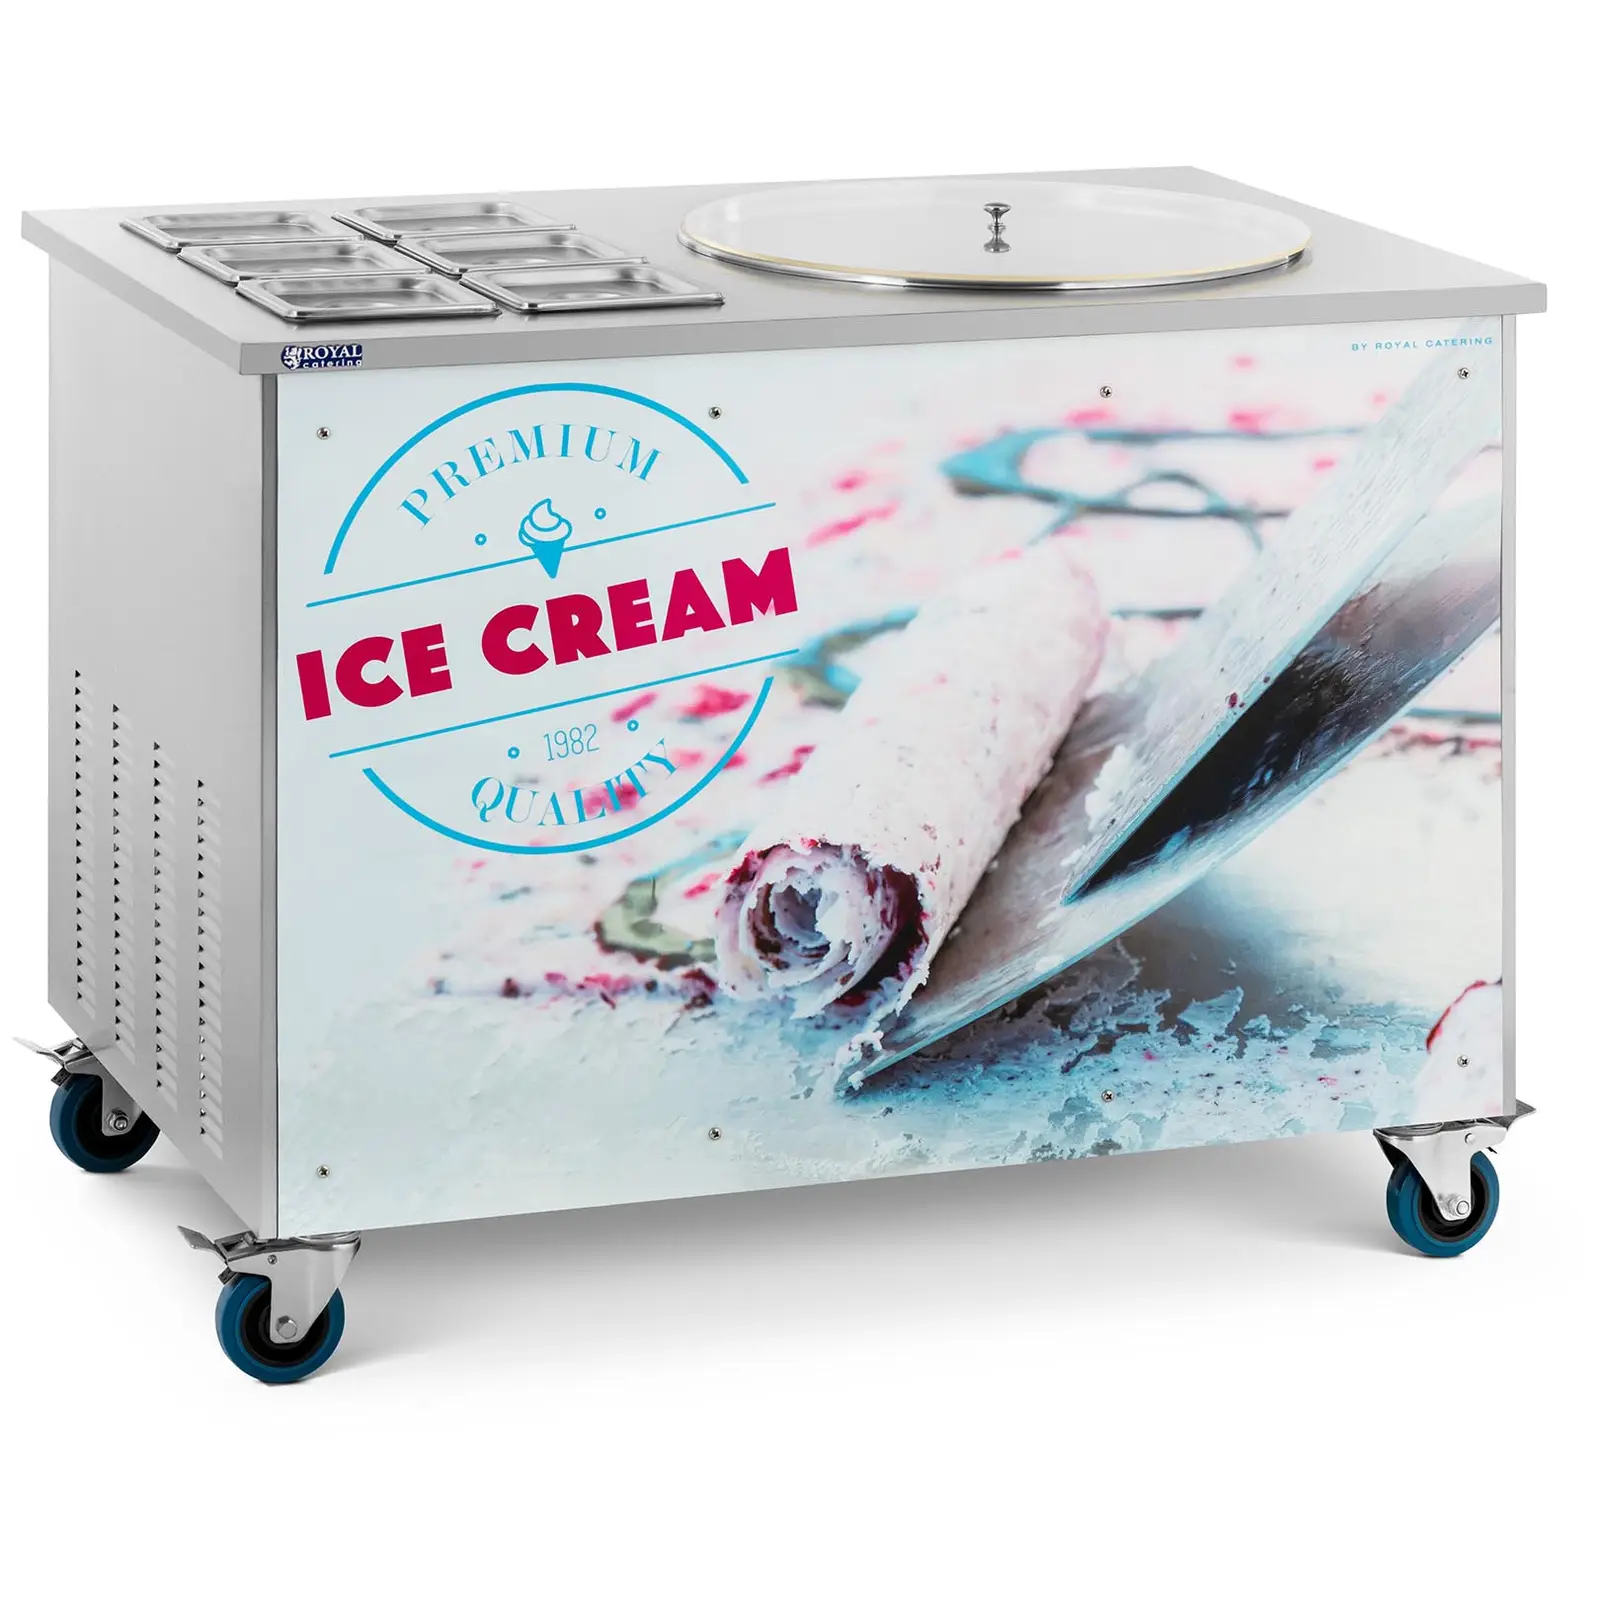 Máquina de gelado enrolado - para gelados tailandeses - Ø50 x 2,5 cm - 6 recipientes com tampas - Royal Catering